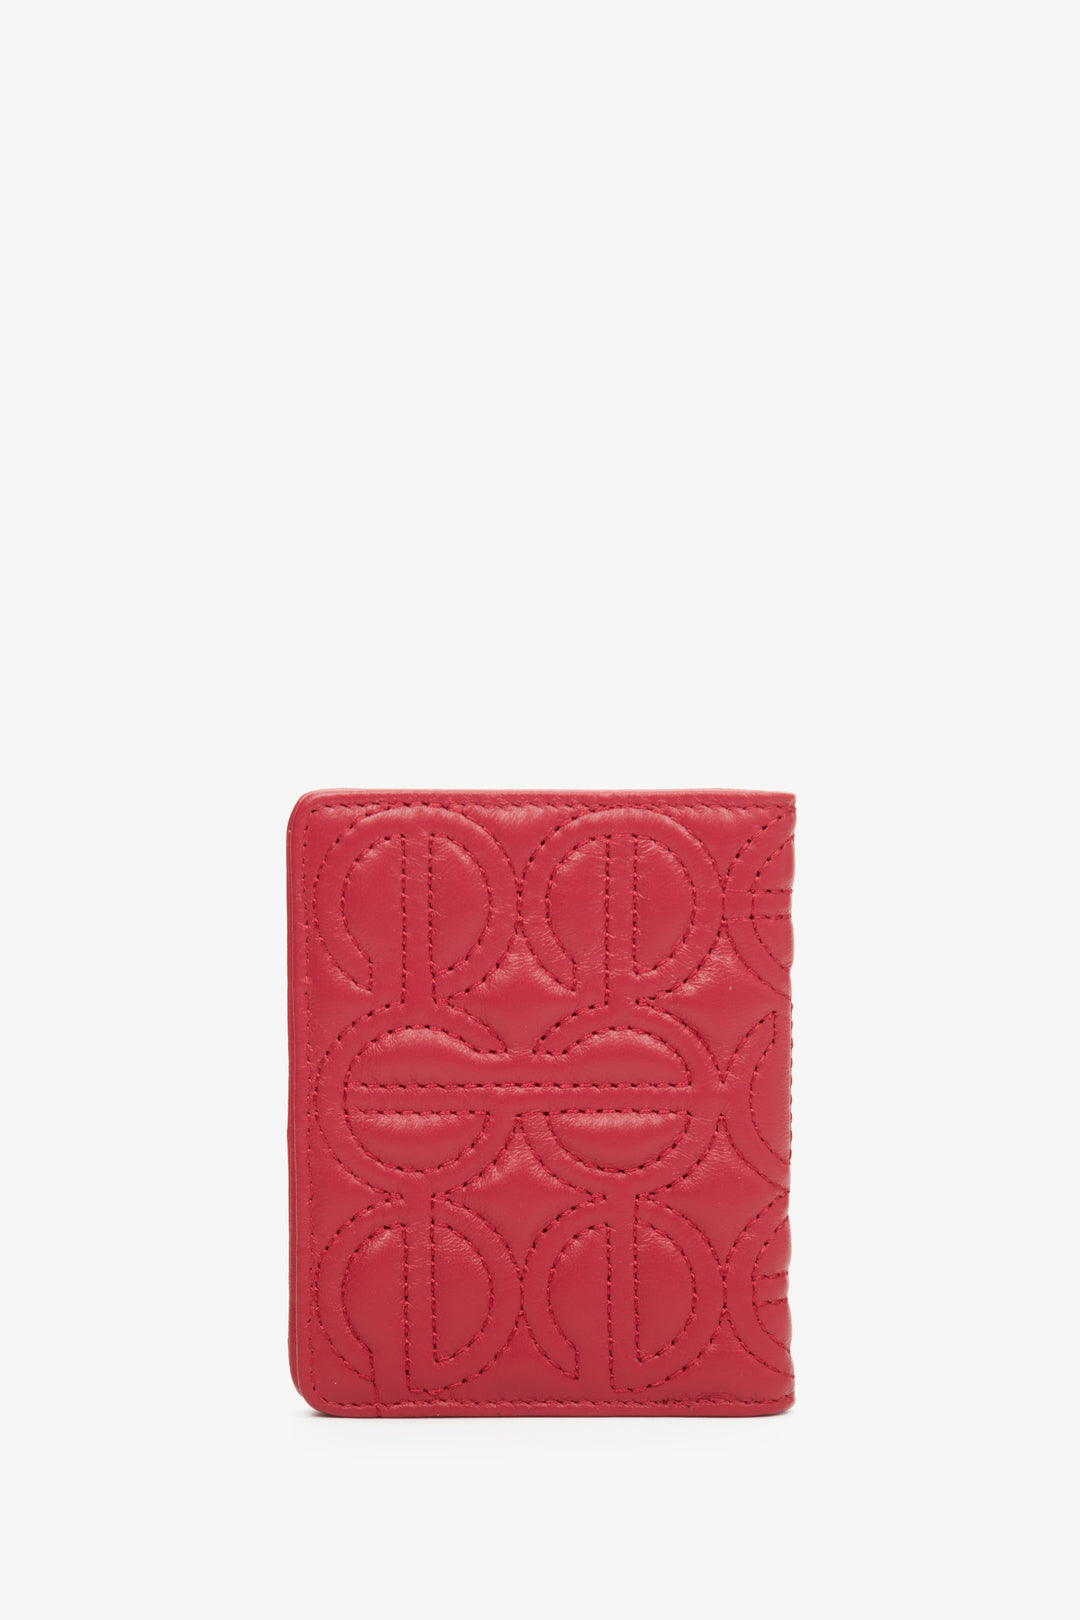 Skórzany, mały portfel damski w kolorze czerwonym marki Estro z tłoczonym logo.